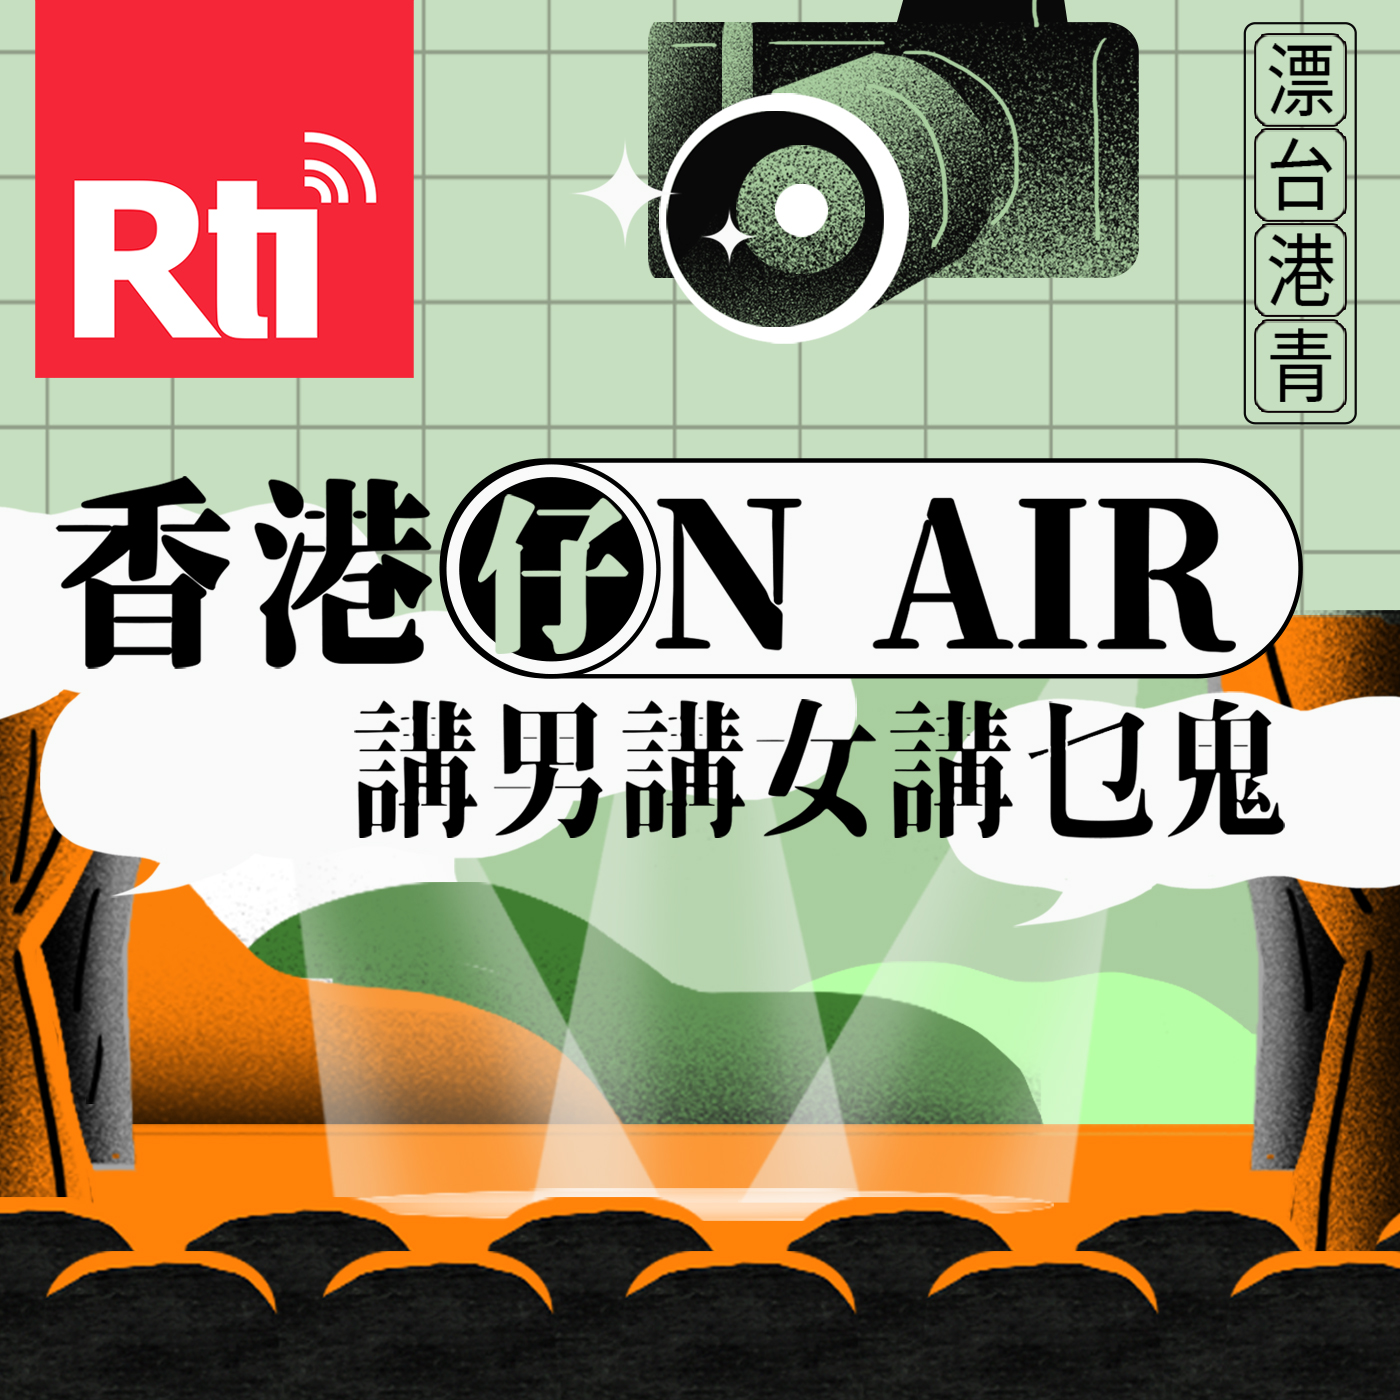 香港仔ON AIR—講男講女講乜鬼